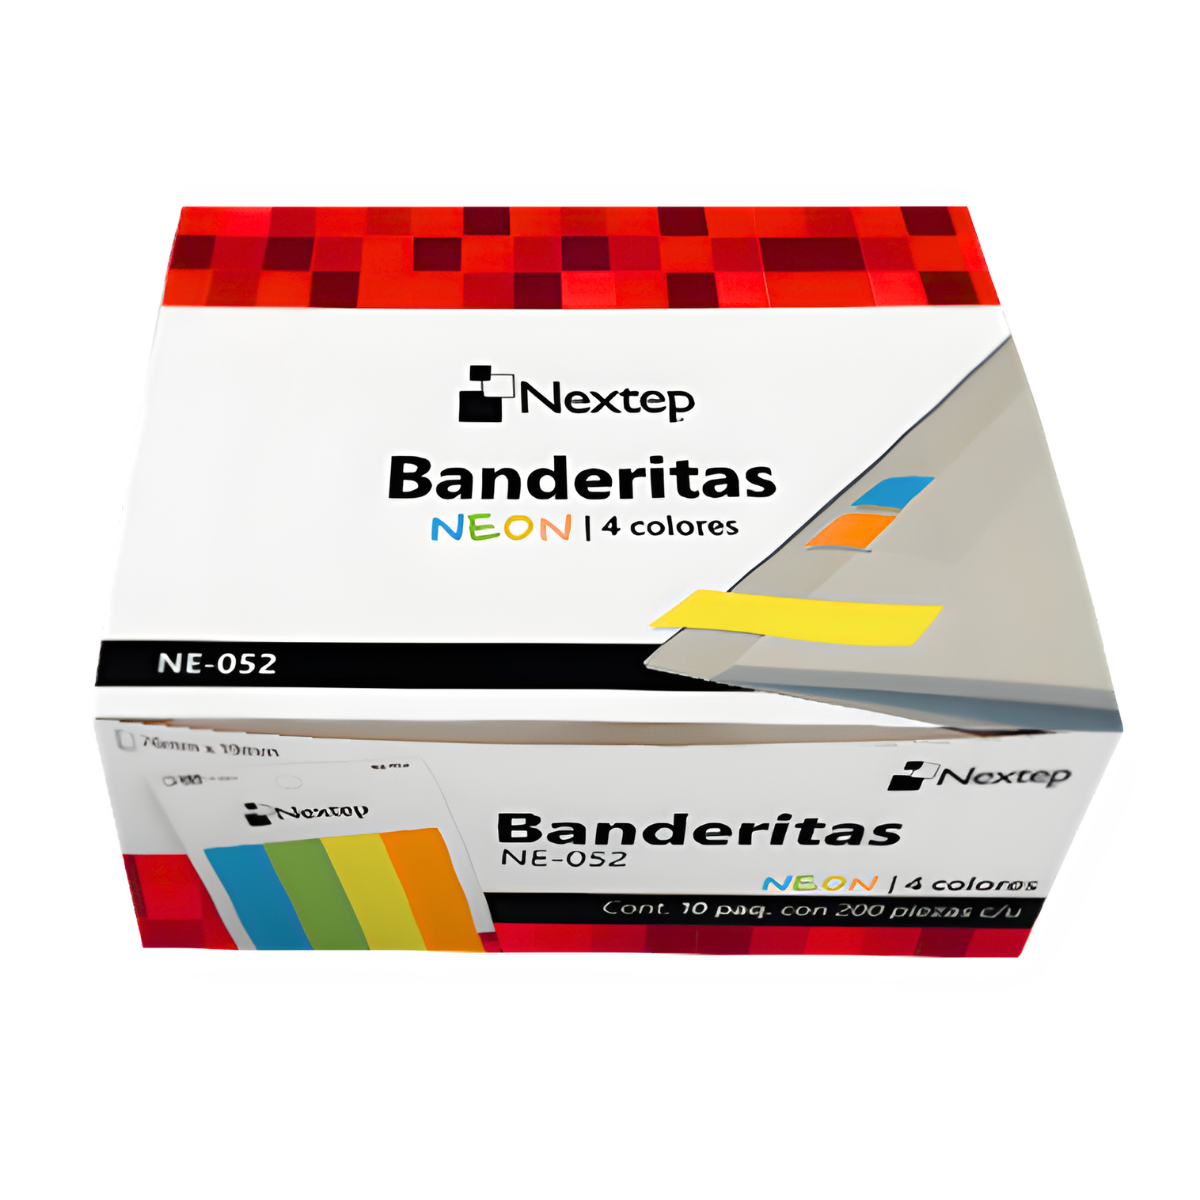 Banderitas Nextep Neon 4 Colores 200 Piezas - Caja con 10 Estuches